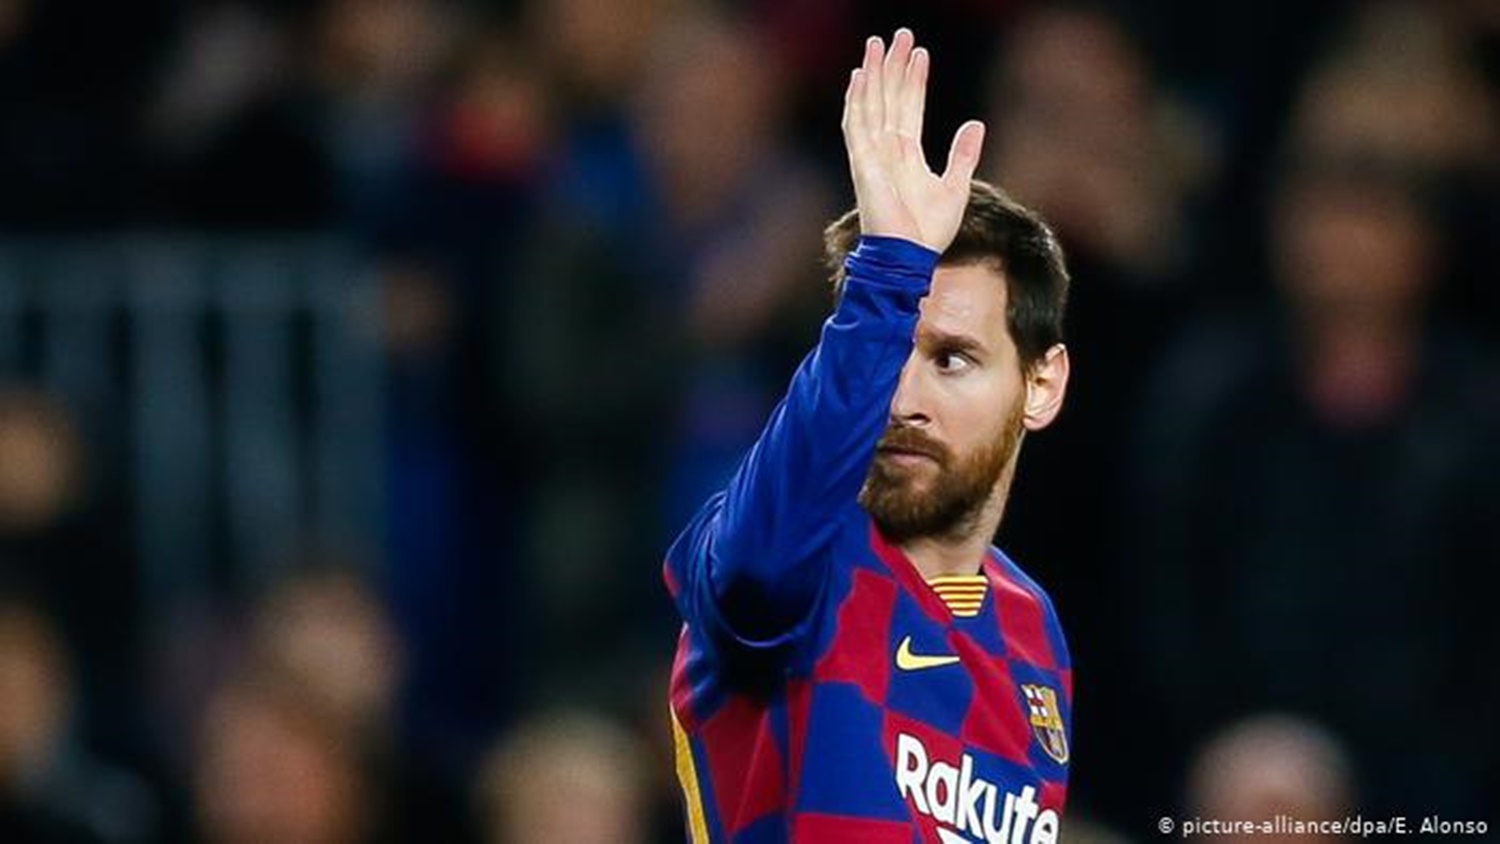 Nu mai participă la antrenamente! Messi a anunțat că vrea să părăsească FC Barcelona